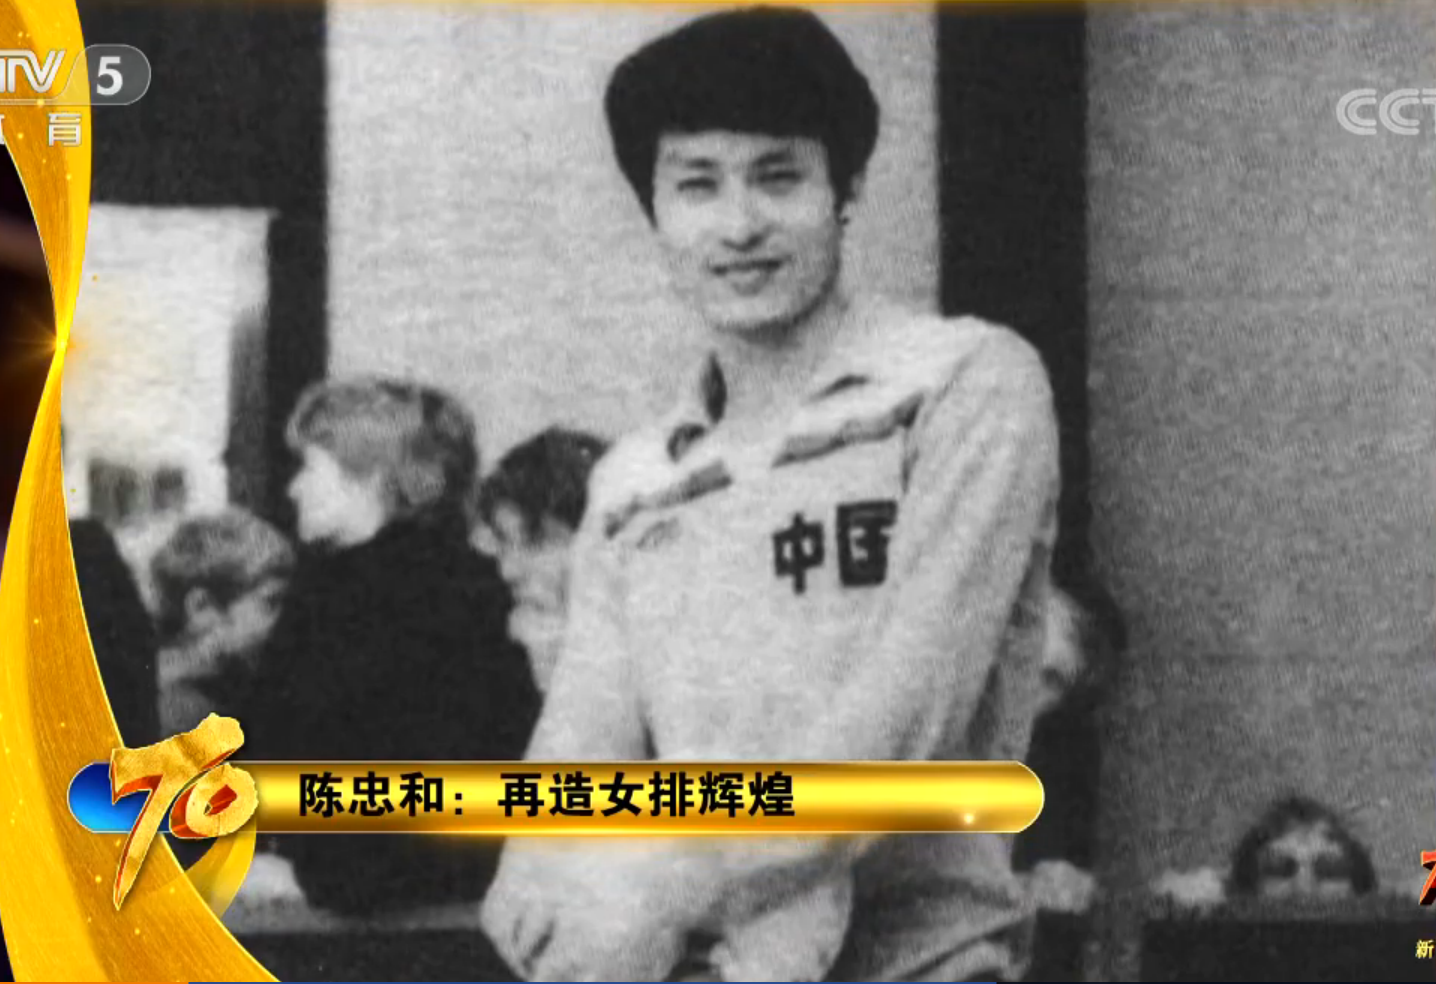 陈忠和年轻时入选过福建男排,但1米77的身高让他很难在运动员生涯走得